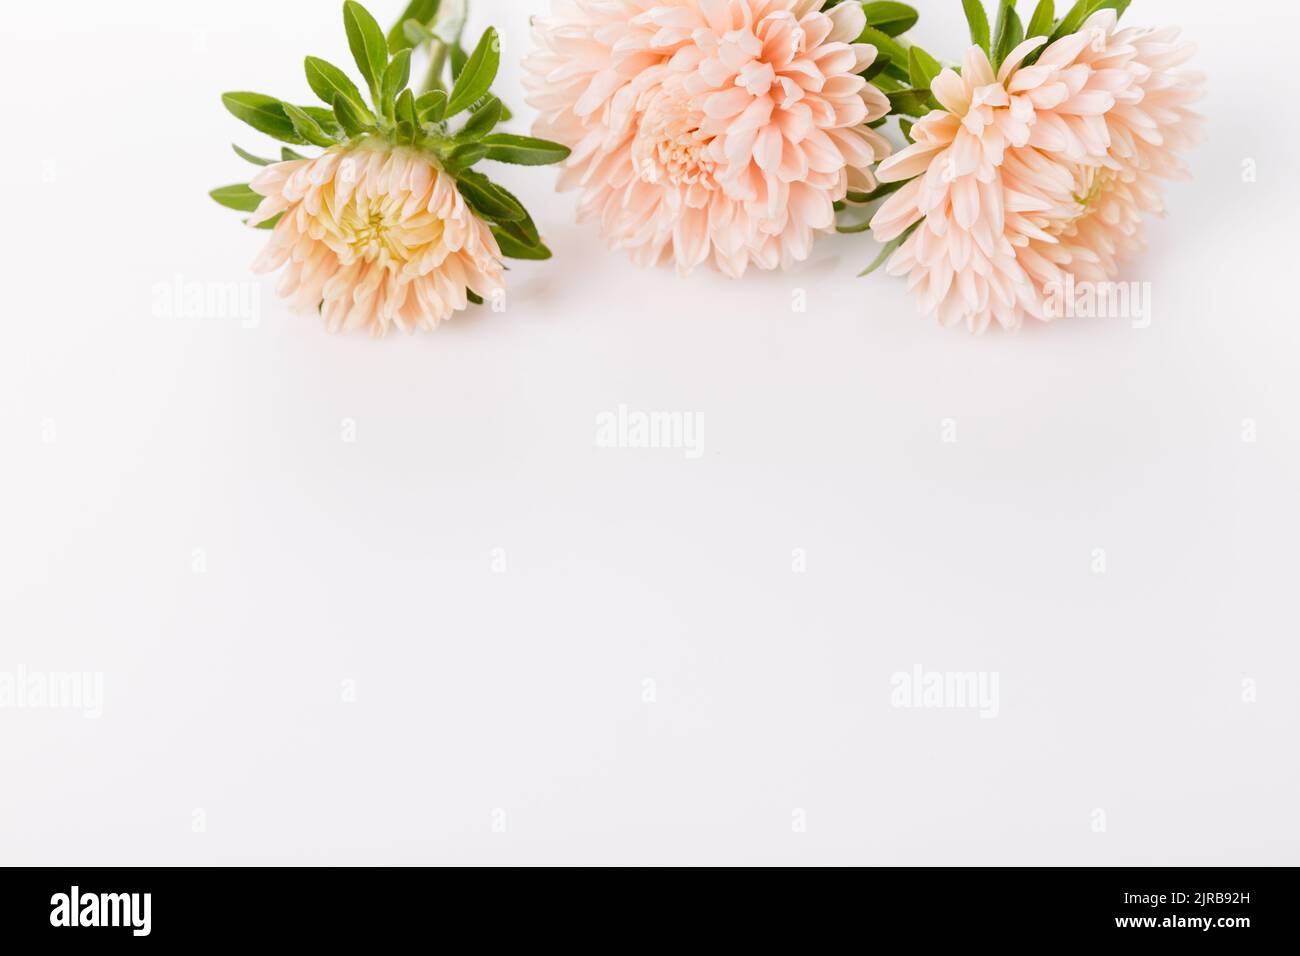 Herbstlicher Rahmen aus staubigen Korallen-Astern-Blüten, florale Komposition isoliert auf weißem Hintergrund. Draufsicht mit Kopierbereich Stockfoto